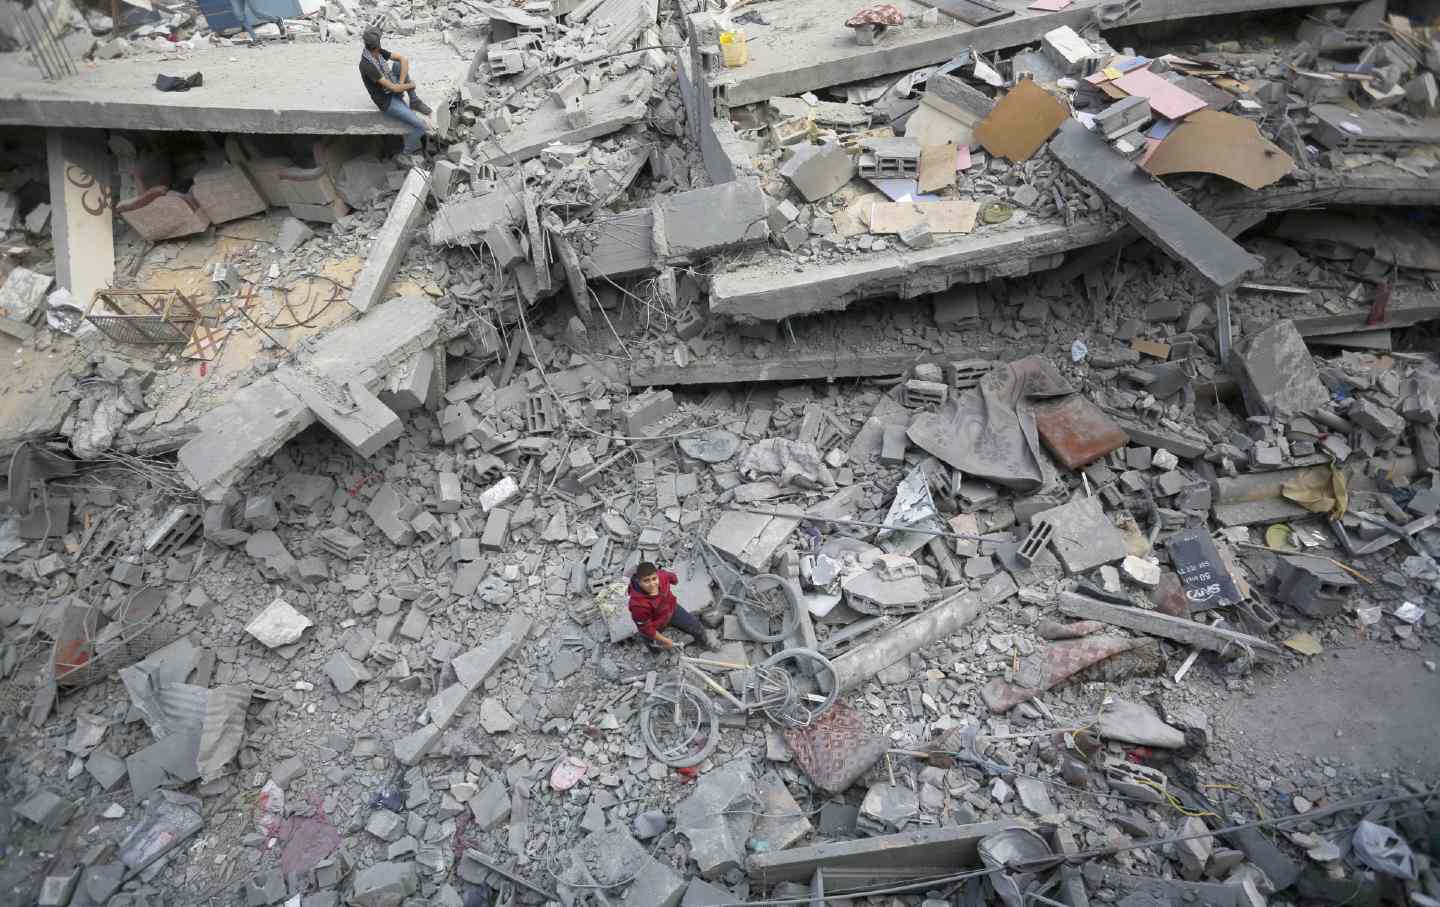 Palästinenser versuchen in einem zerstörten Wohngebiet, brauchbare Gegenstände unter den Trümmern zu sammeln.